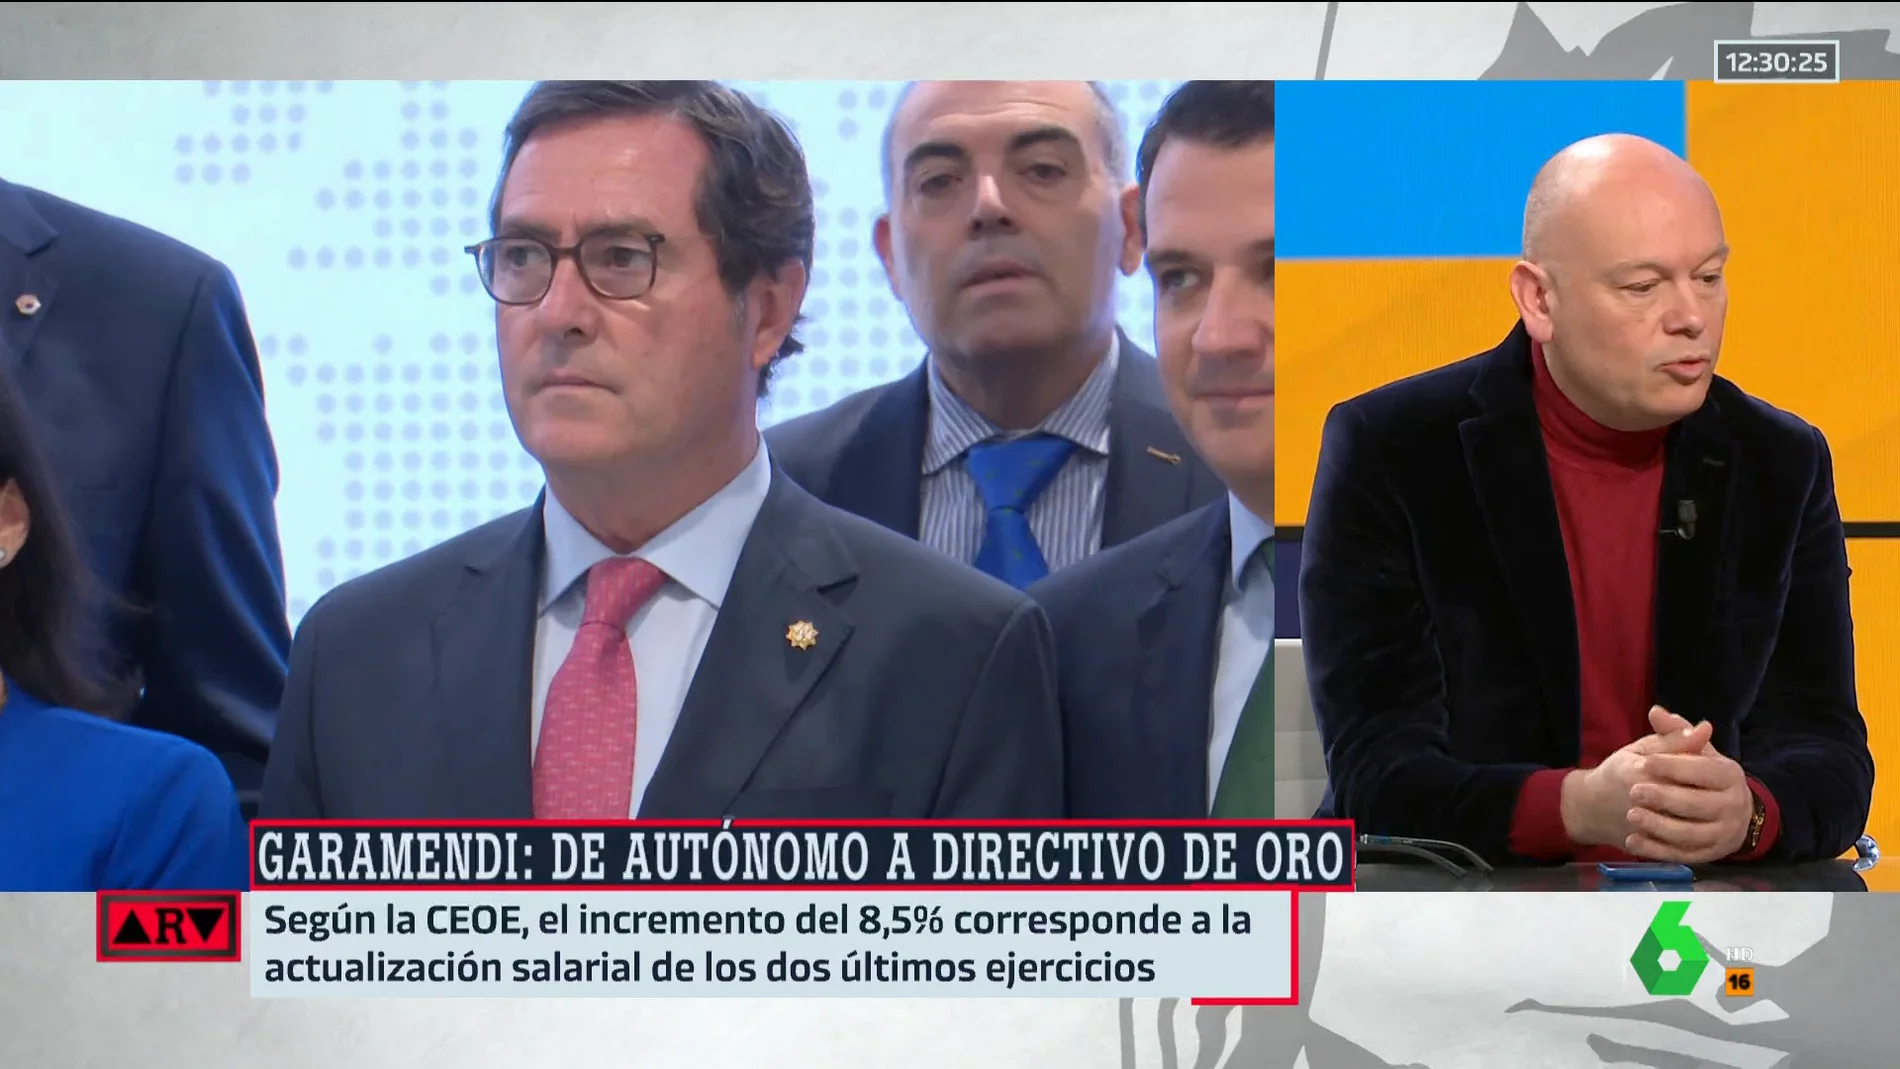 Gabriel Sanz, después de que Garamendi (CEOE) se aumente el sueldo un 9%: "Va a tener muy difícil negarse a subir los sueldos"